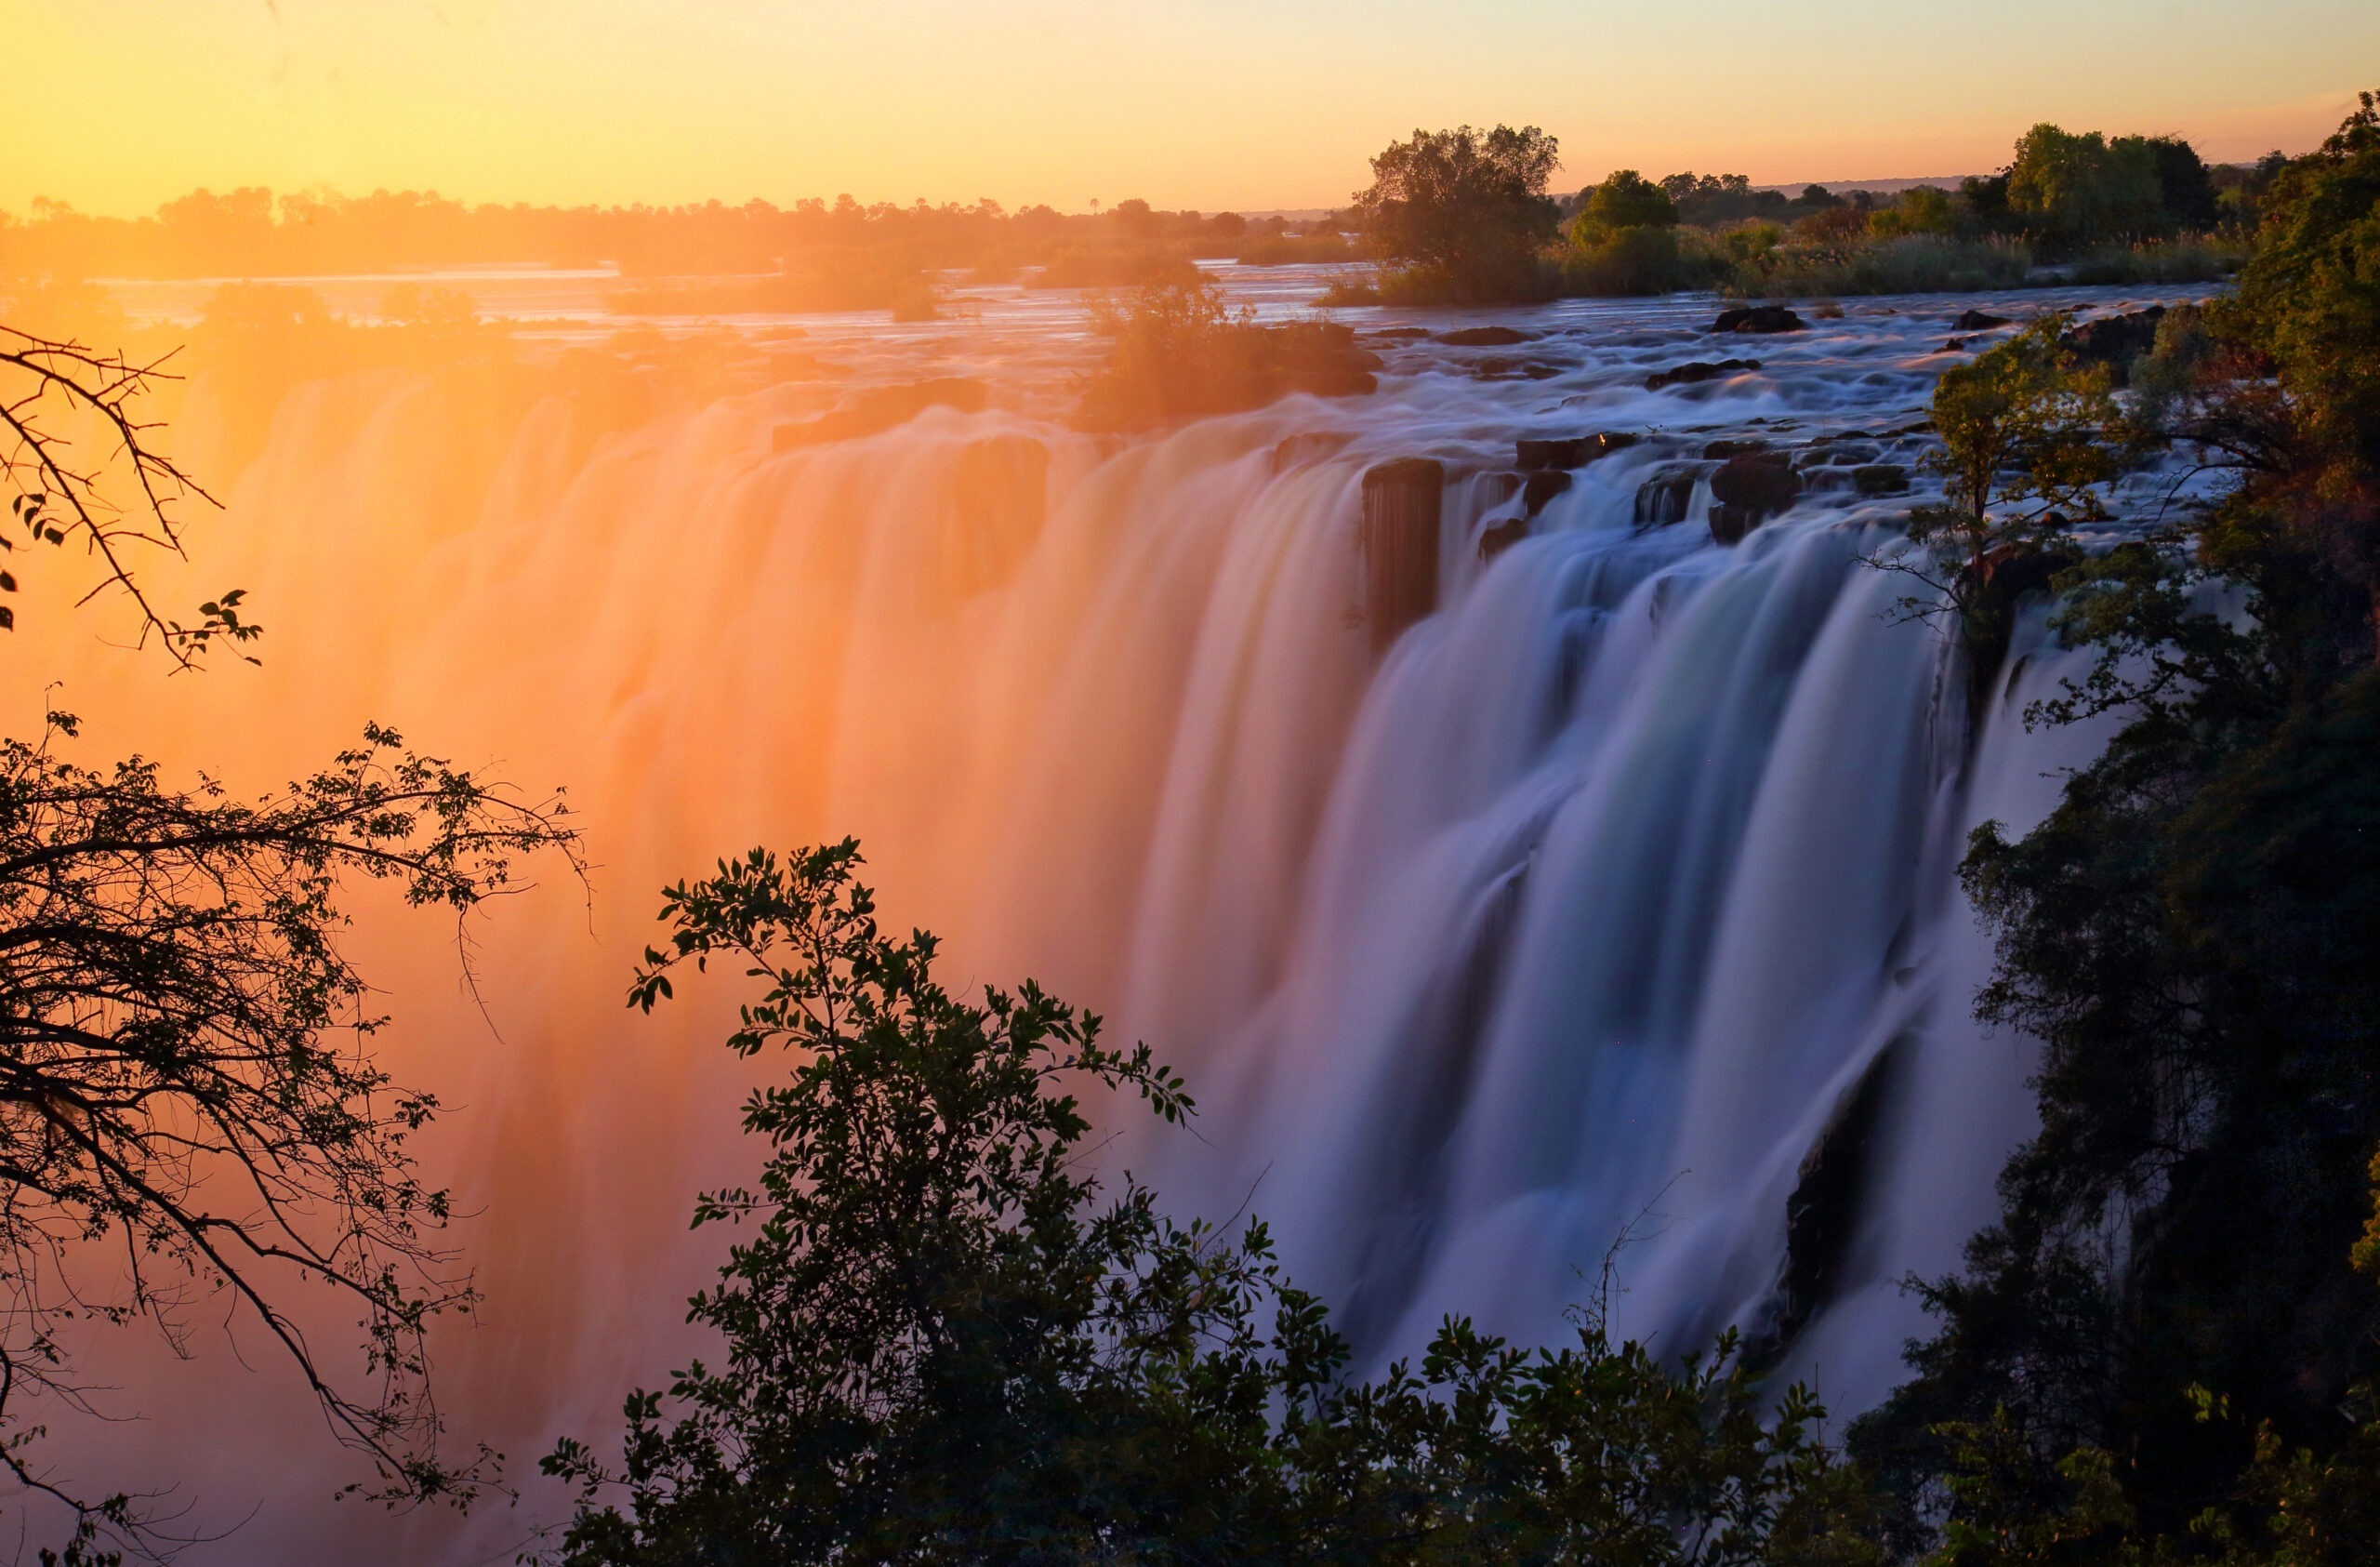 Victoria Falls at sunset. Zambia